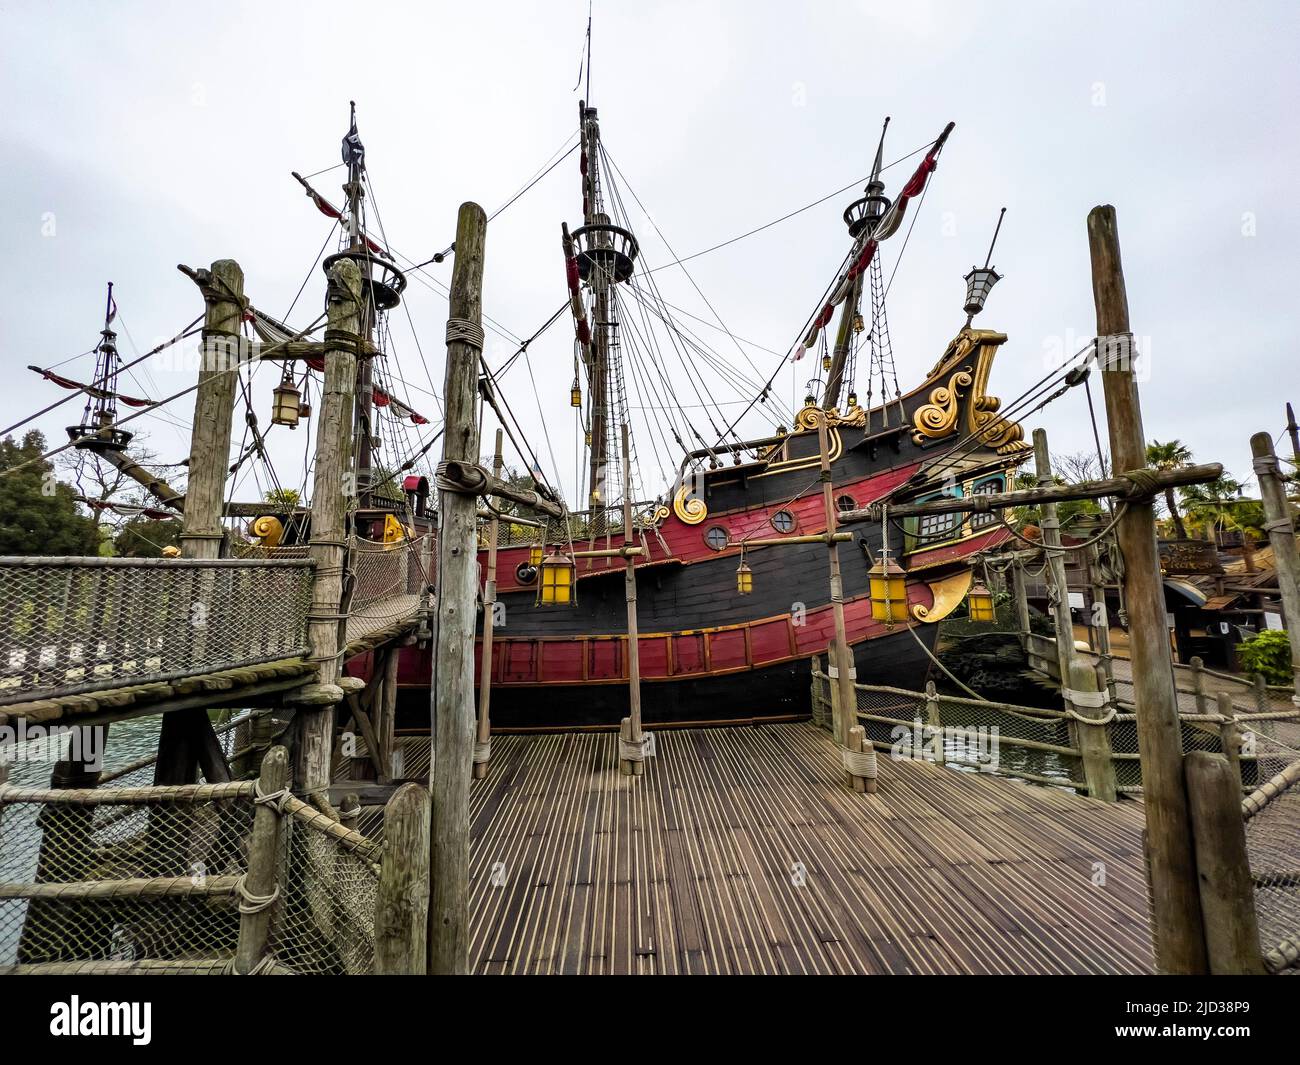 Parigi, Francia - 04/05/2022: Pirati dei Caraibi scena di giostre e luoghi di Disneyland Parigi. Modello di nave del capitano Jack Sparrow. Foto Stock